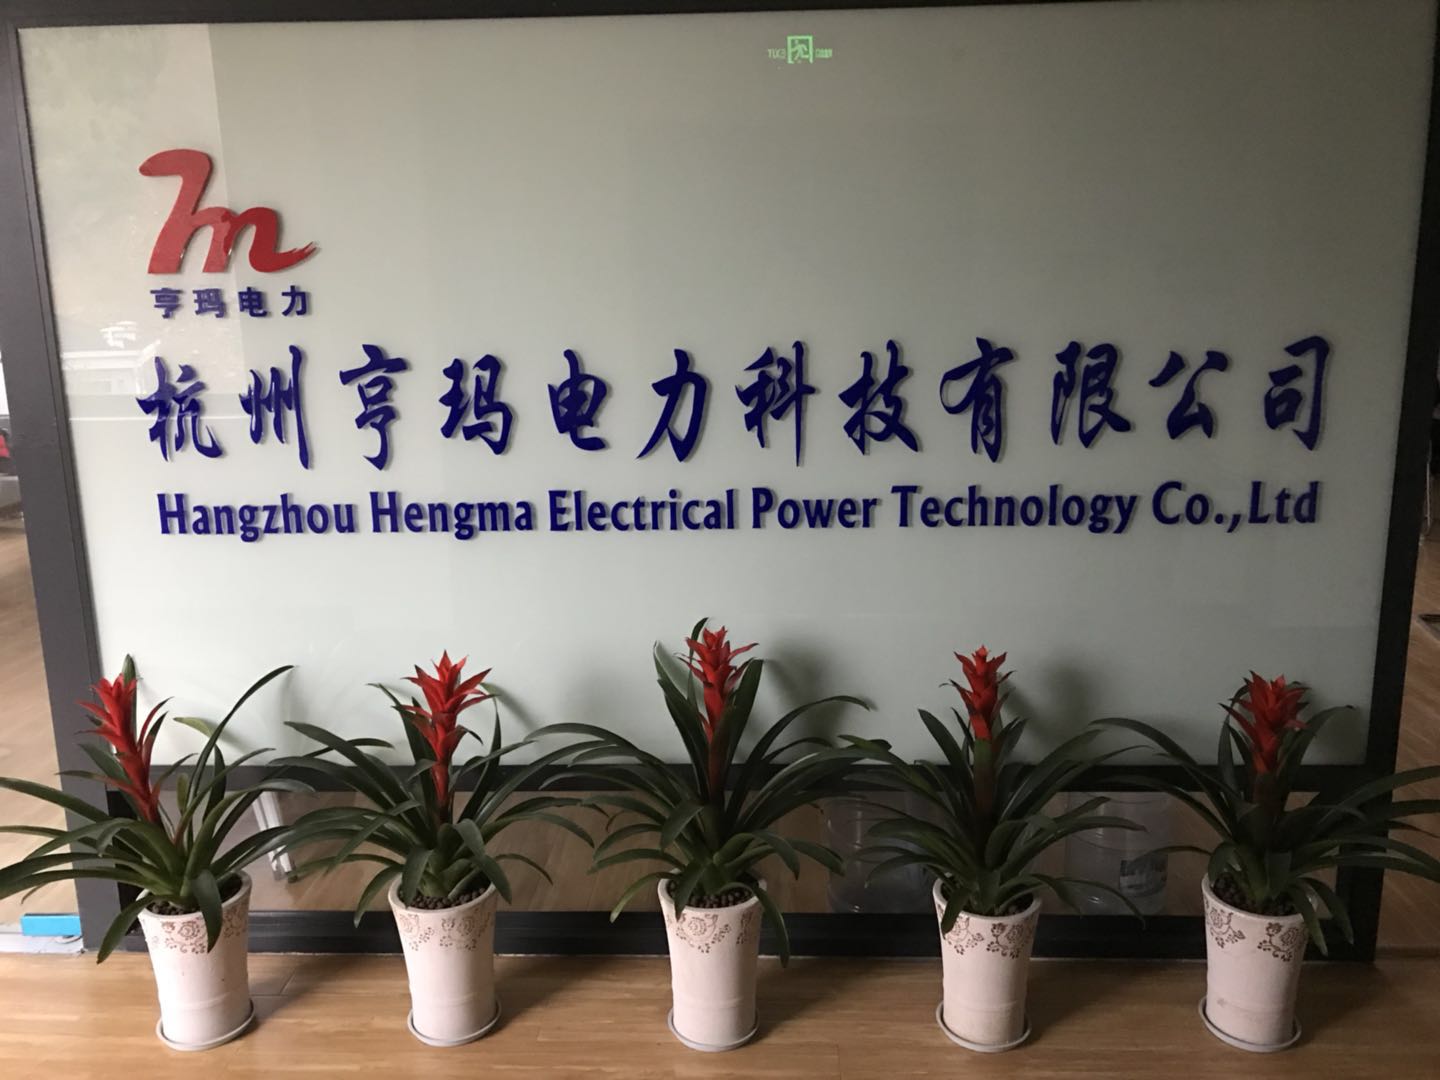 杭州亨玛电力科技有限公司新面貌